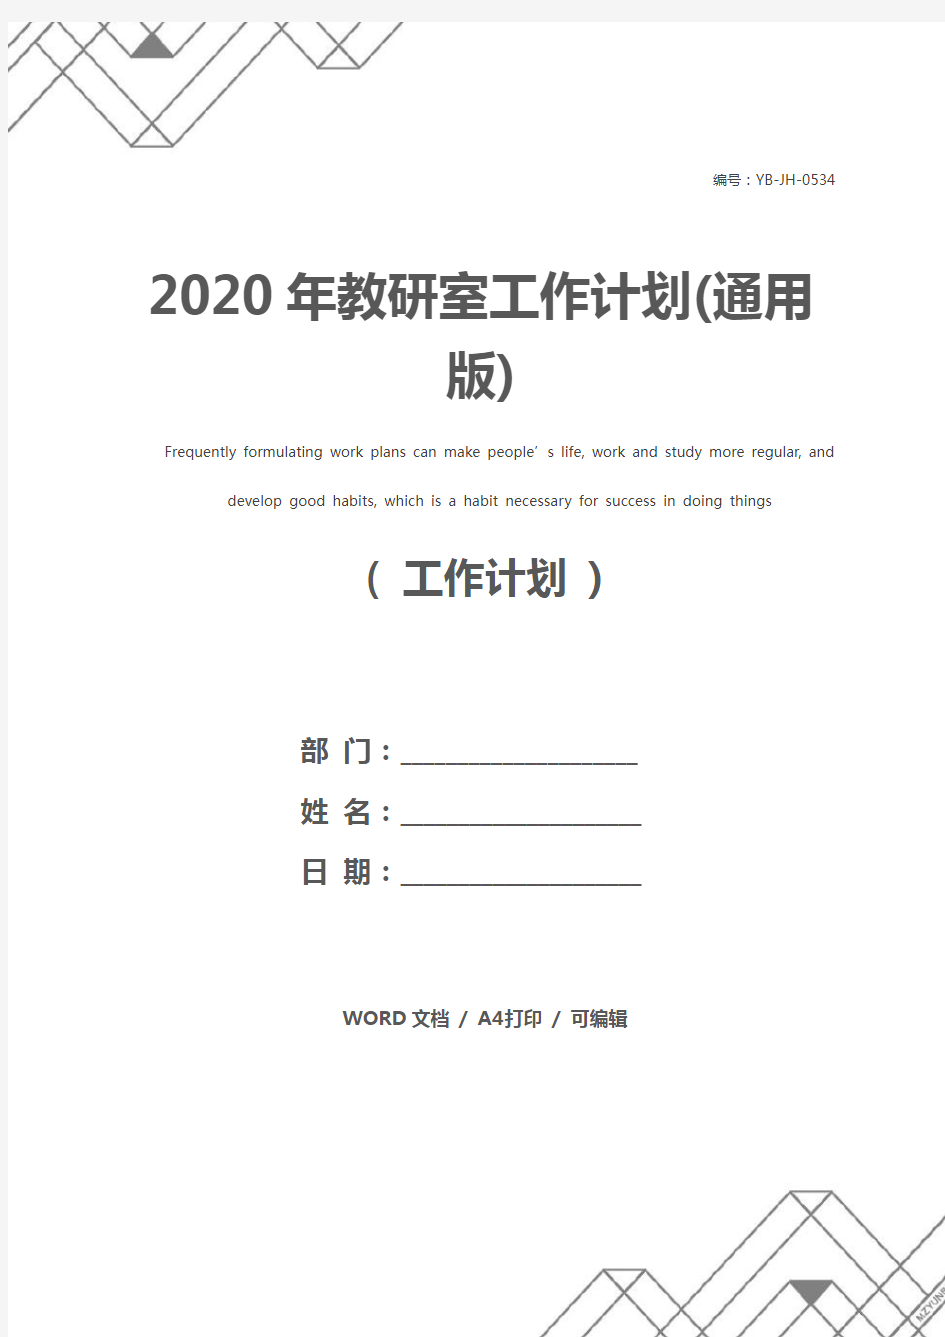 2020年教研室工作计划(通用版)